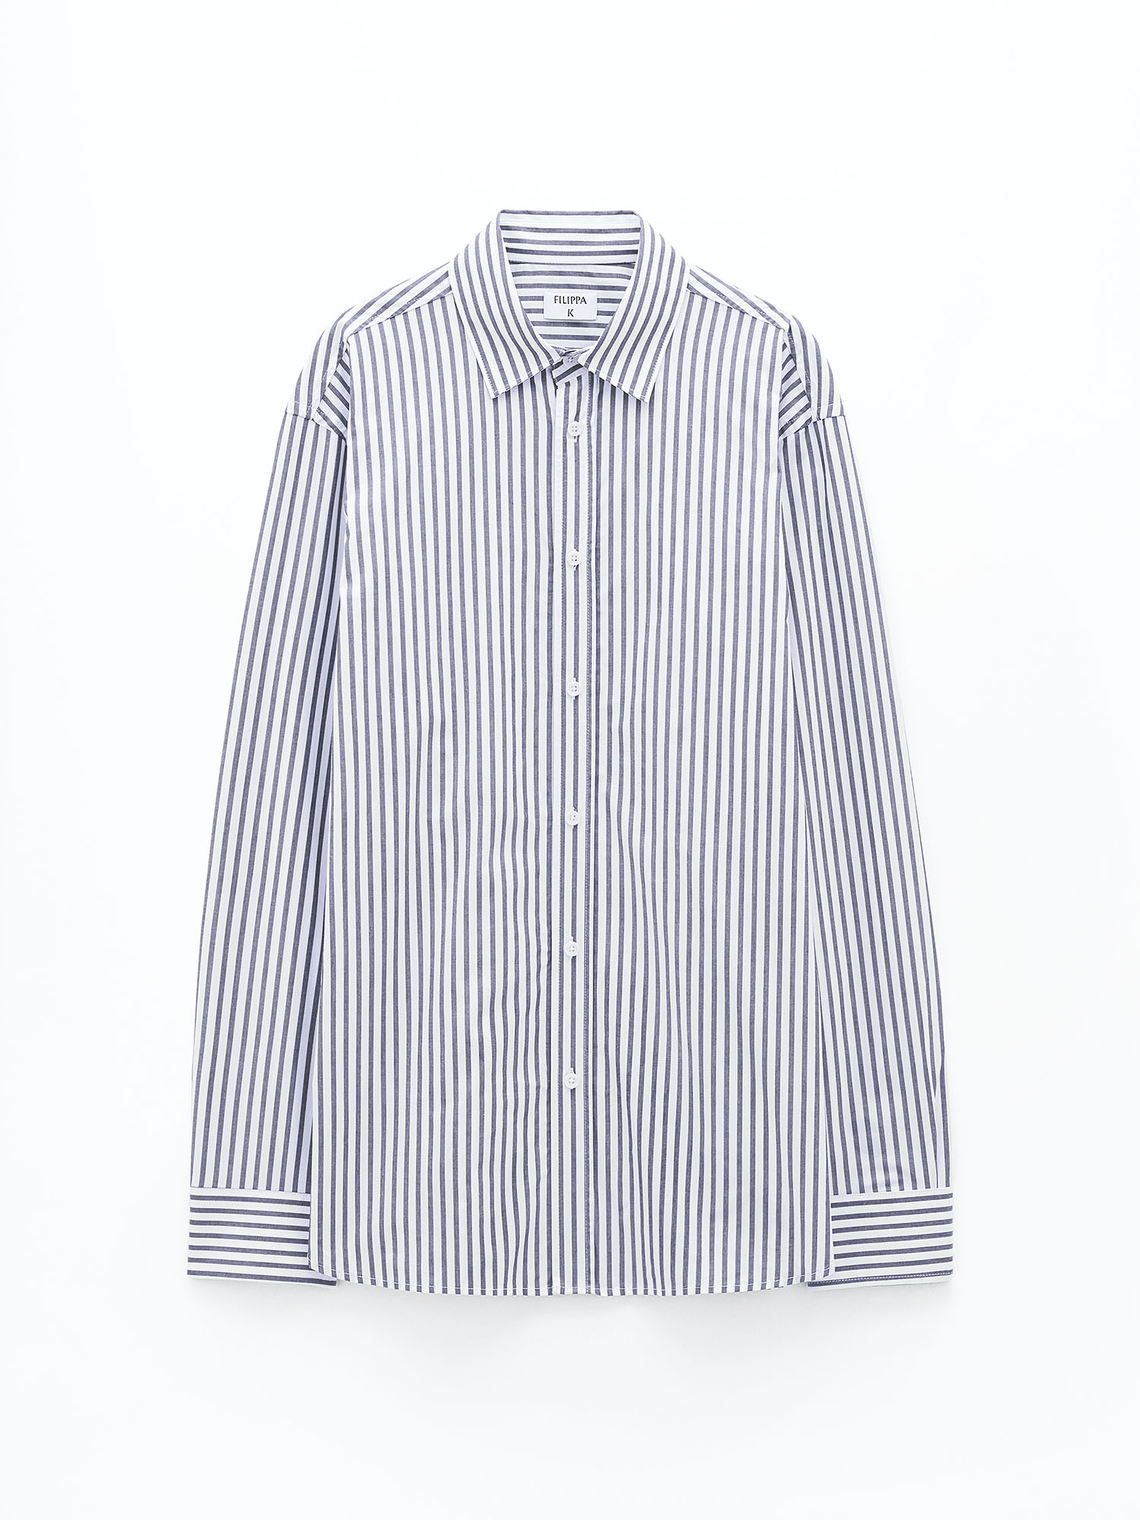 Striped cotton shirt by Filippa K - blue white